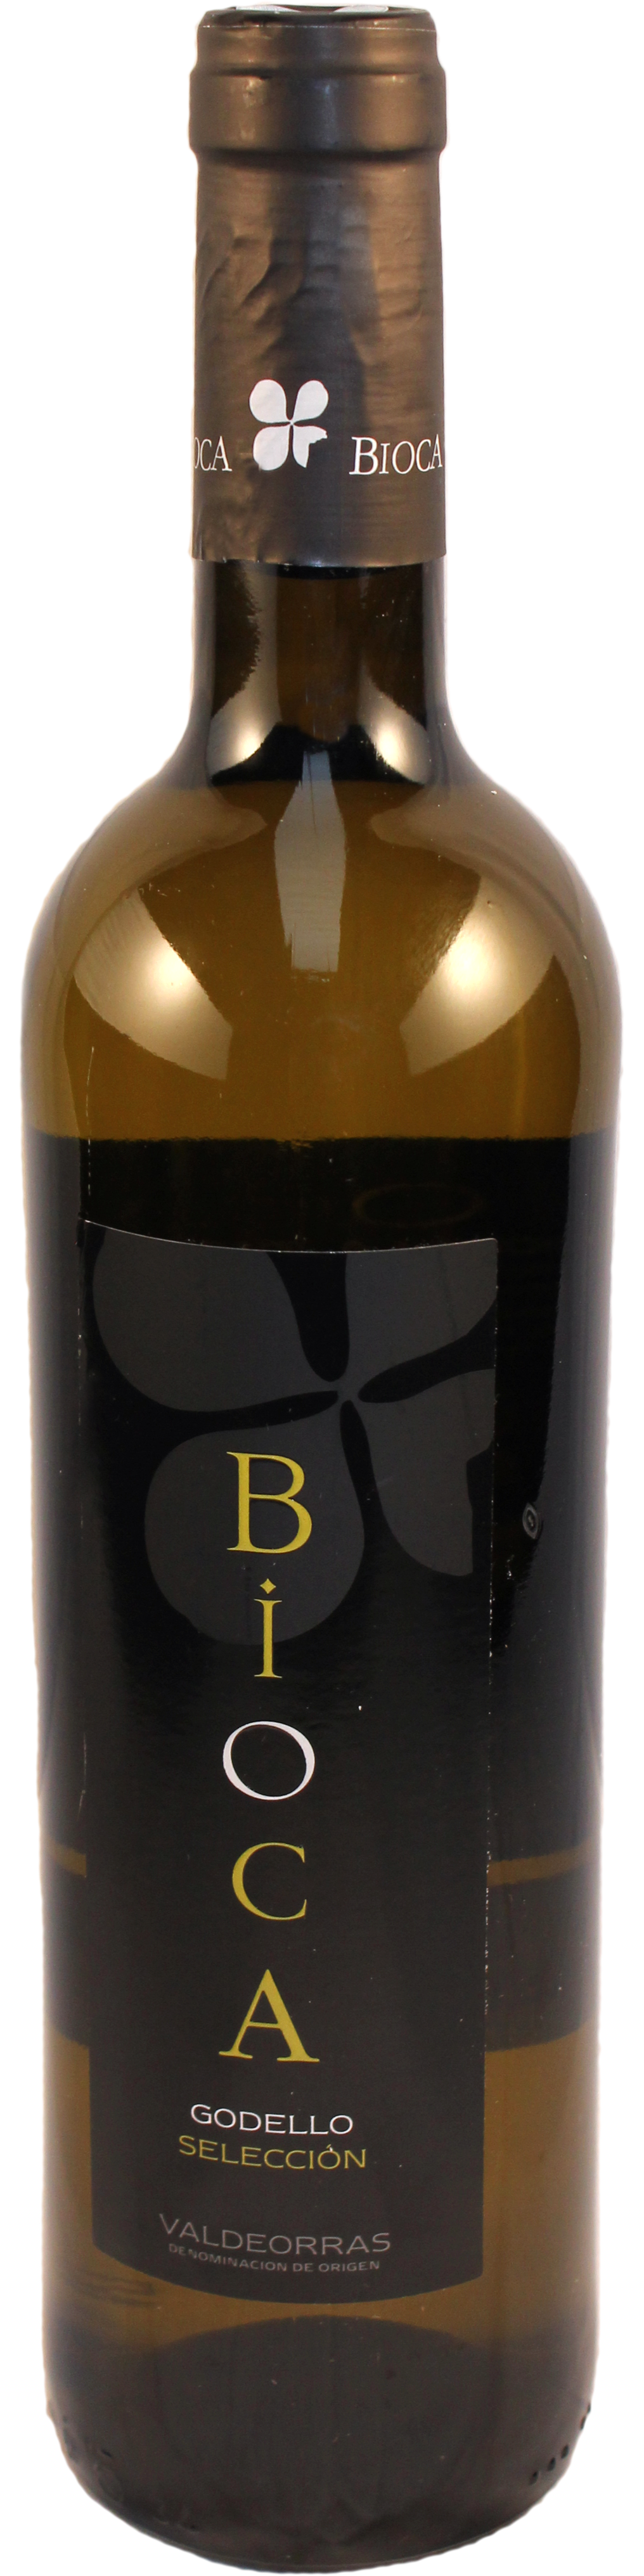 Bottle shot of 2012 Bioca Godello